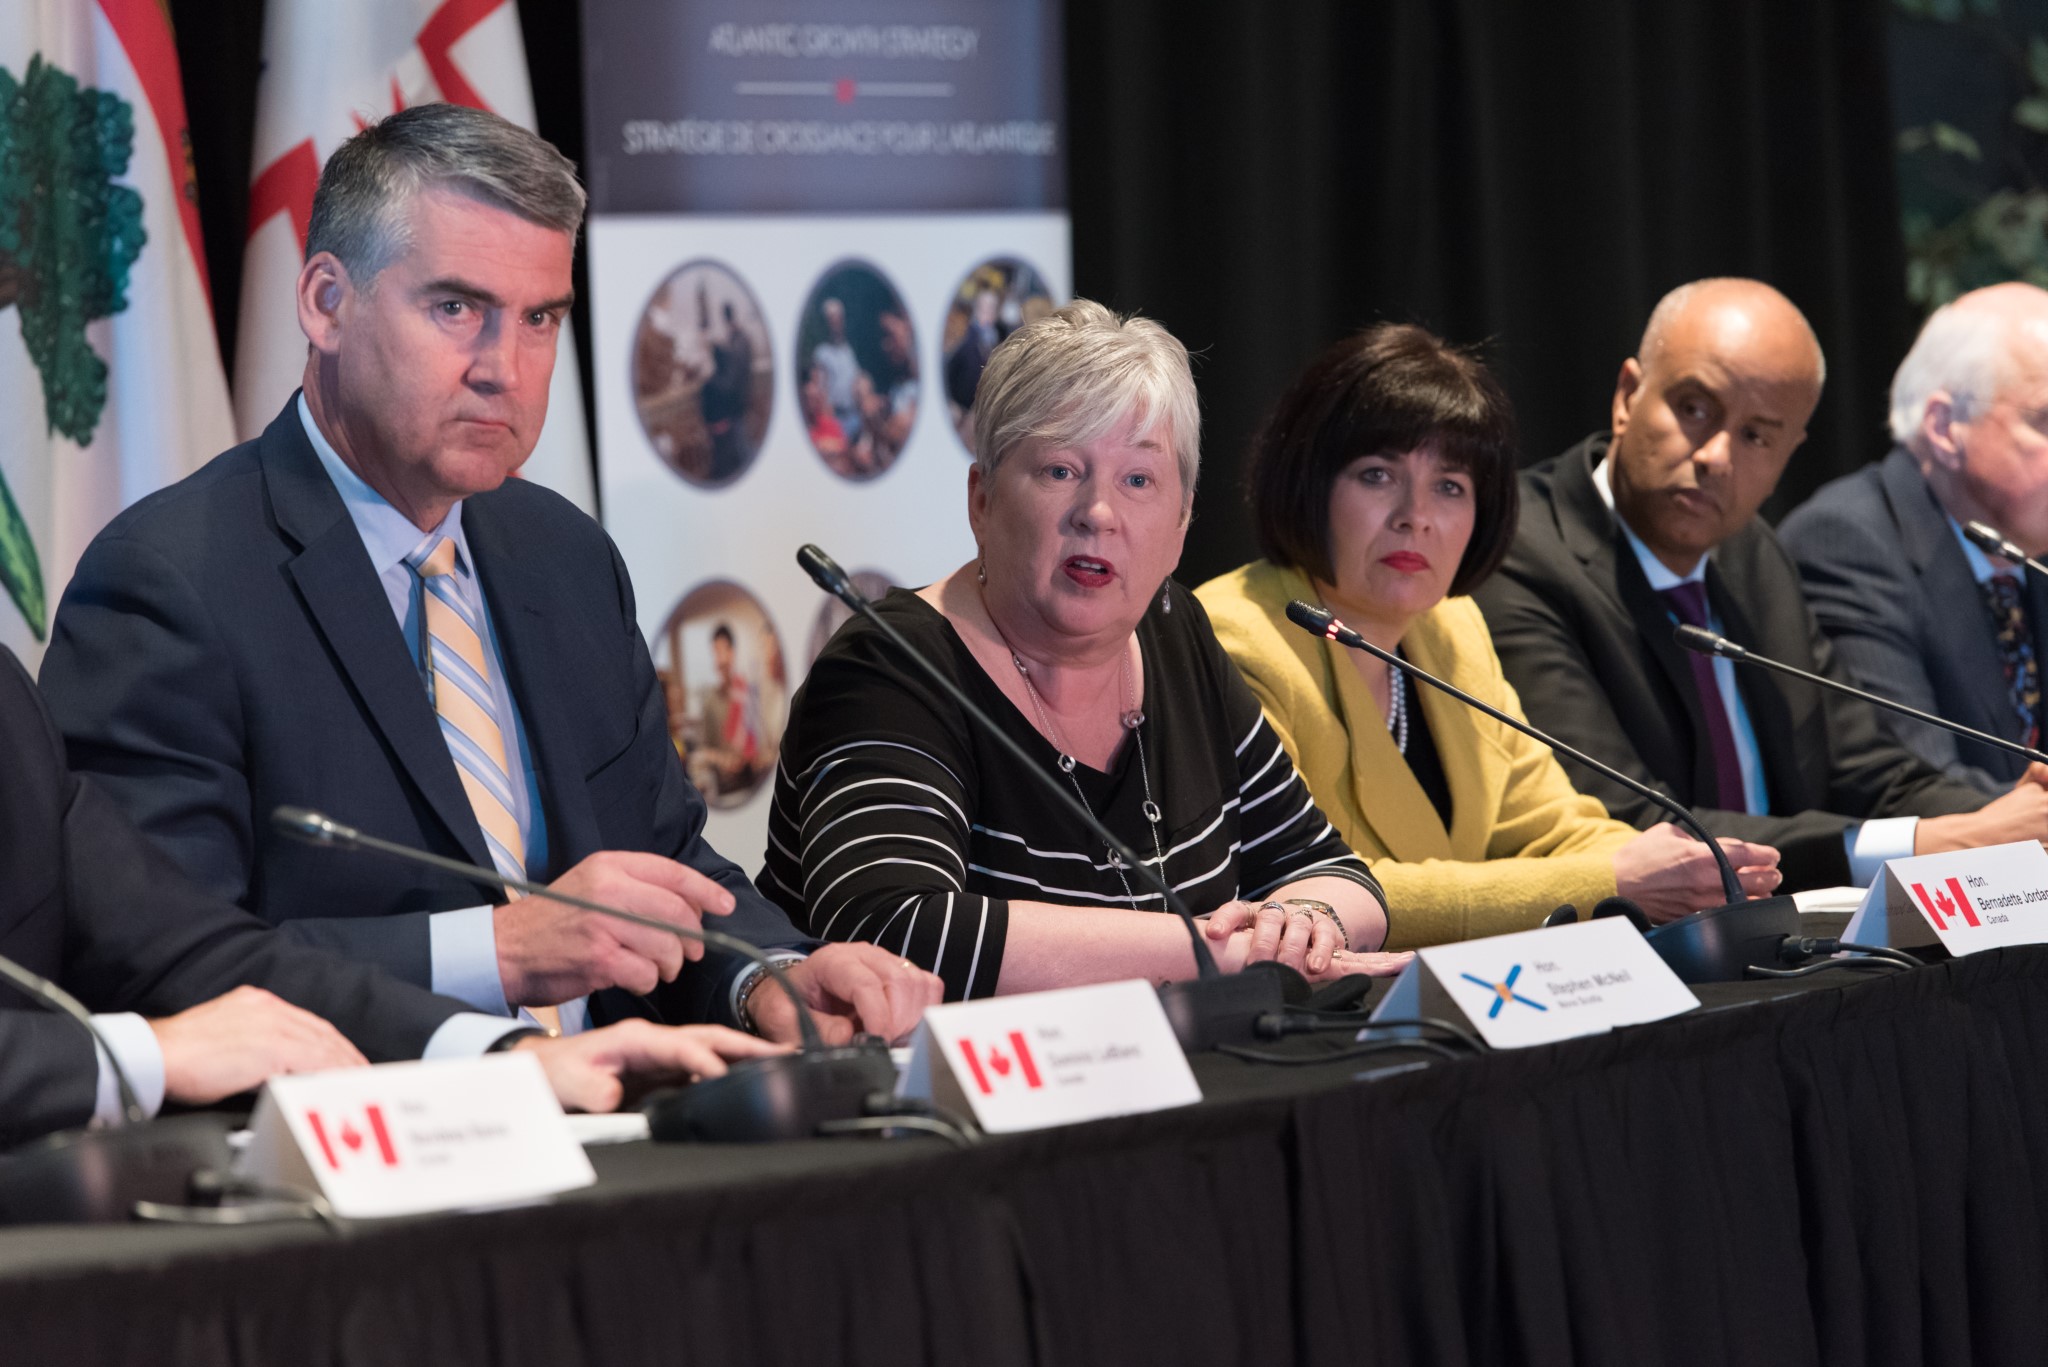 Le 1er mars 2019 – Stephen McNeil, premier ministre de la Nouvelle-Écosse, à gauche, préside la conférence de presse du Comité de direction de la Stratégie de croissance pour l’Atlantique à Halifax, en Nouvelle-Écosse. On peut voir à sa droite Bernadette Jordan, ministre du Développement économique rural.